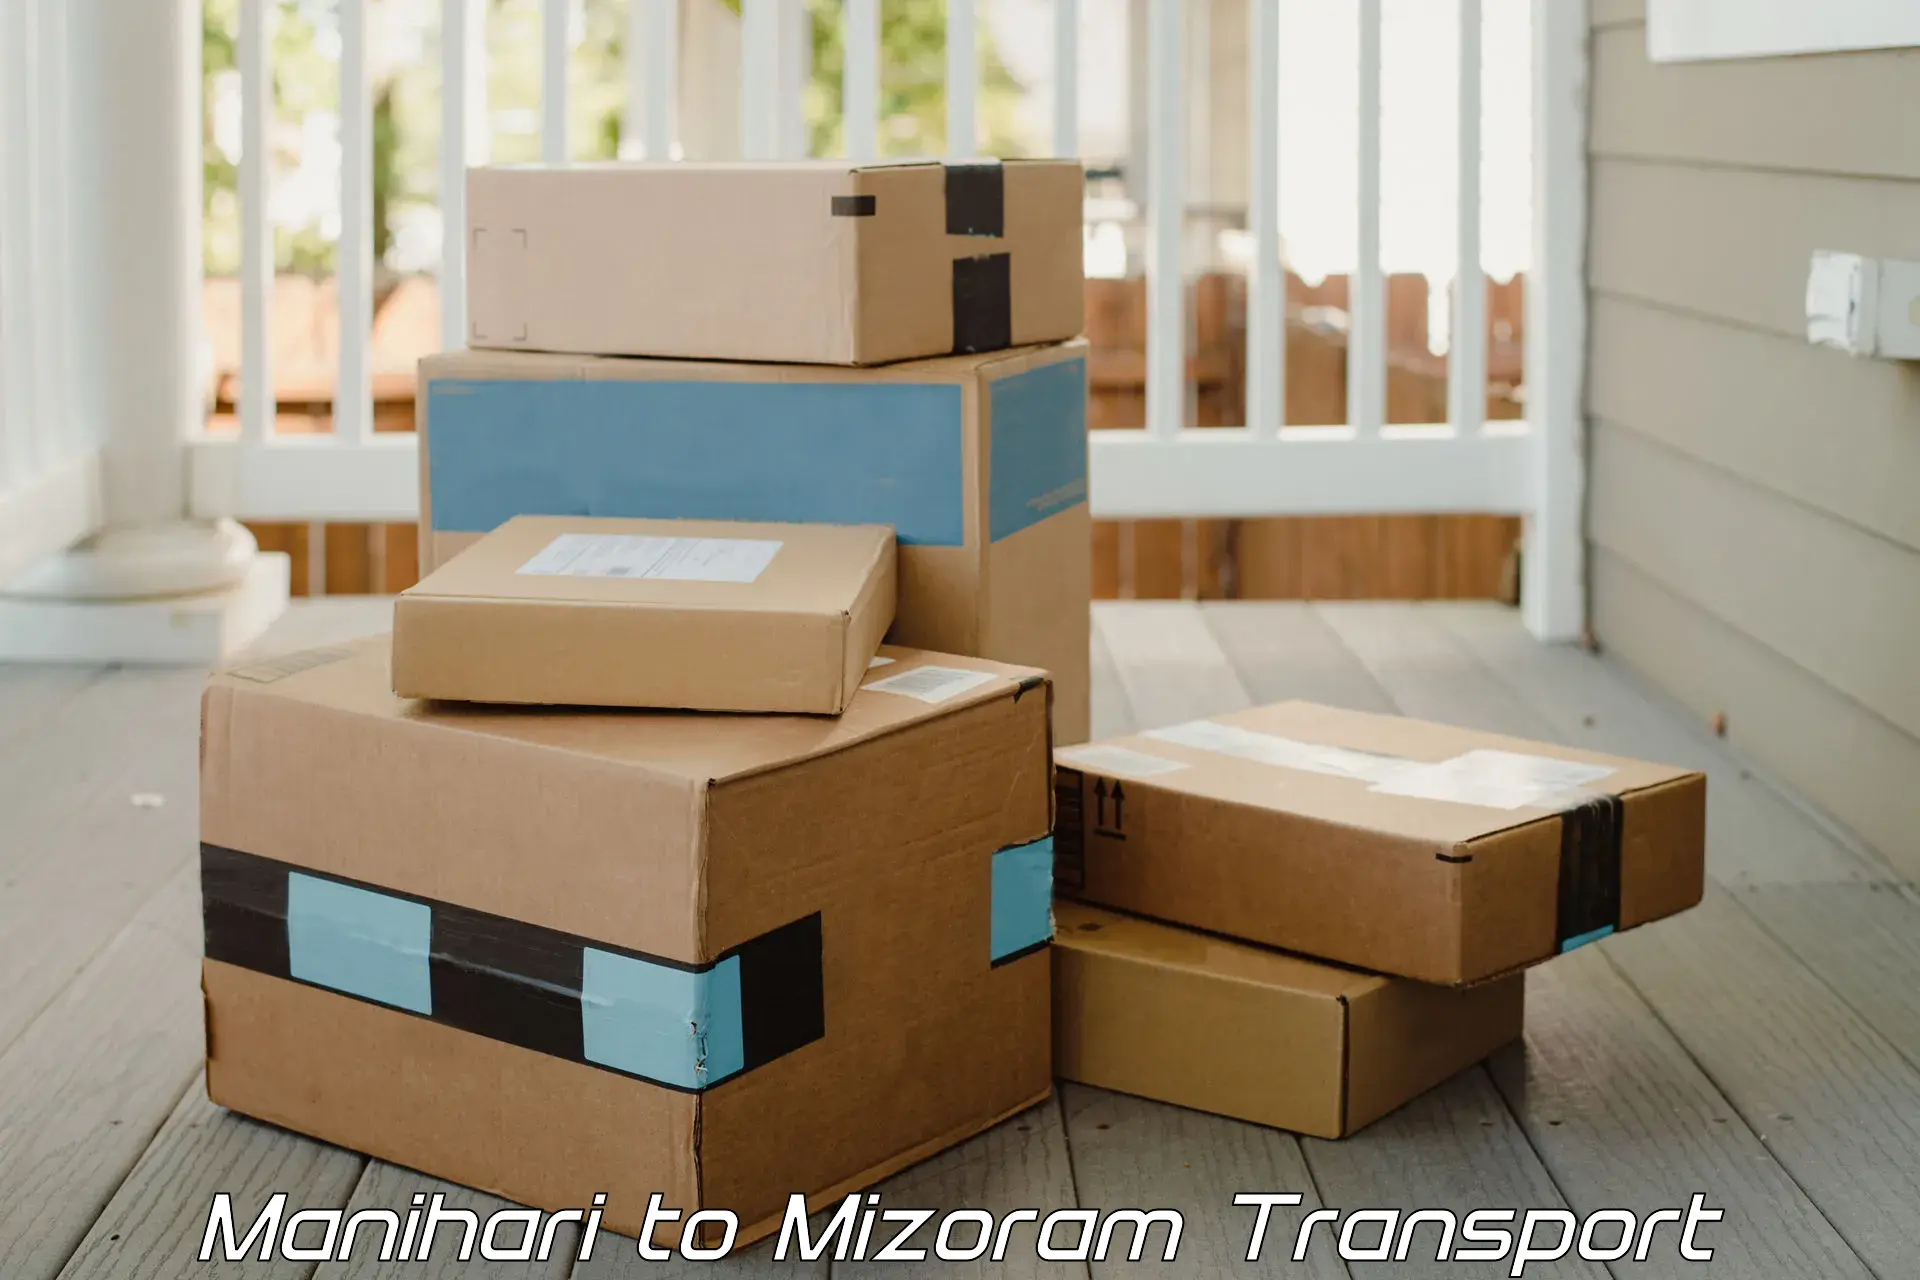 Shipping partner Manihari to NIT Aizawl